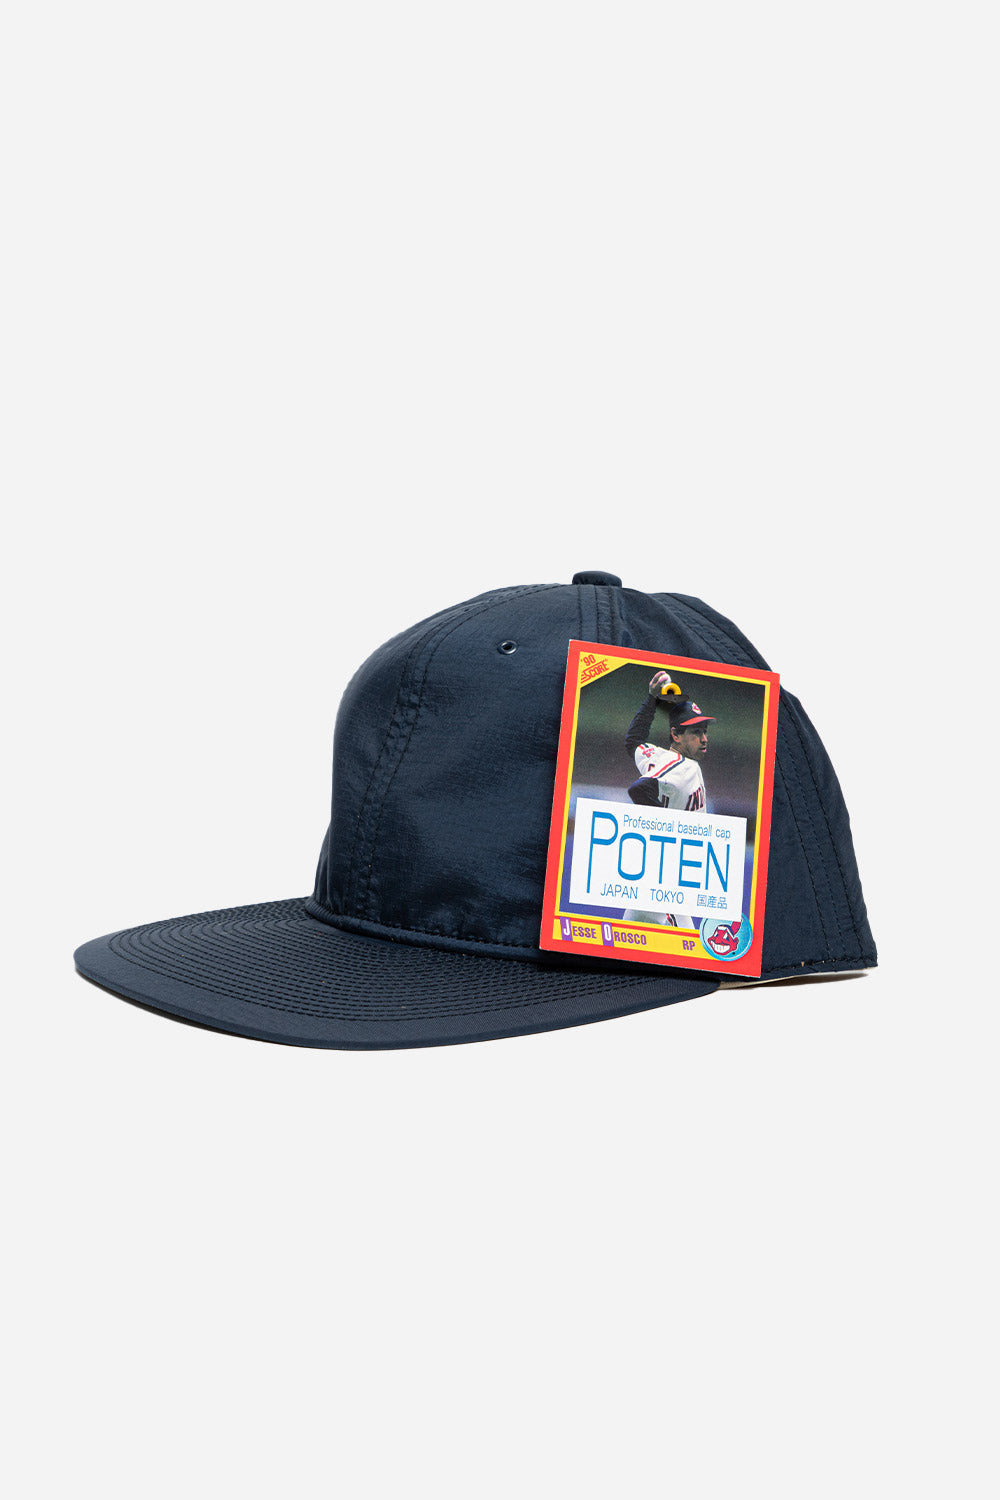 poten-hats-nylon-navy